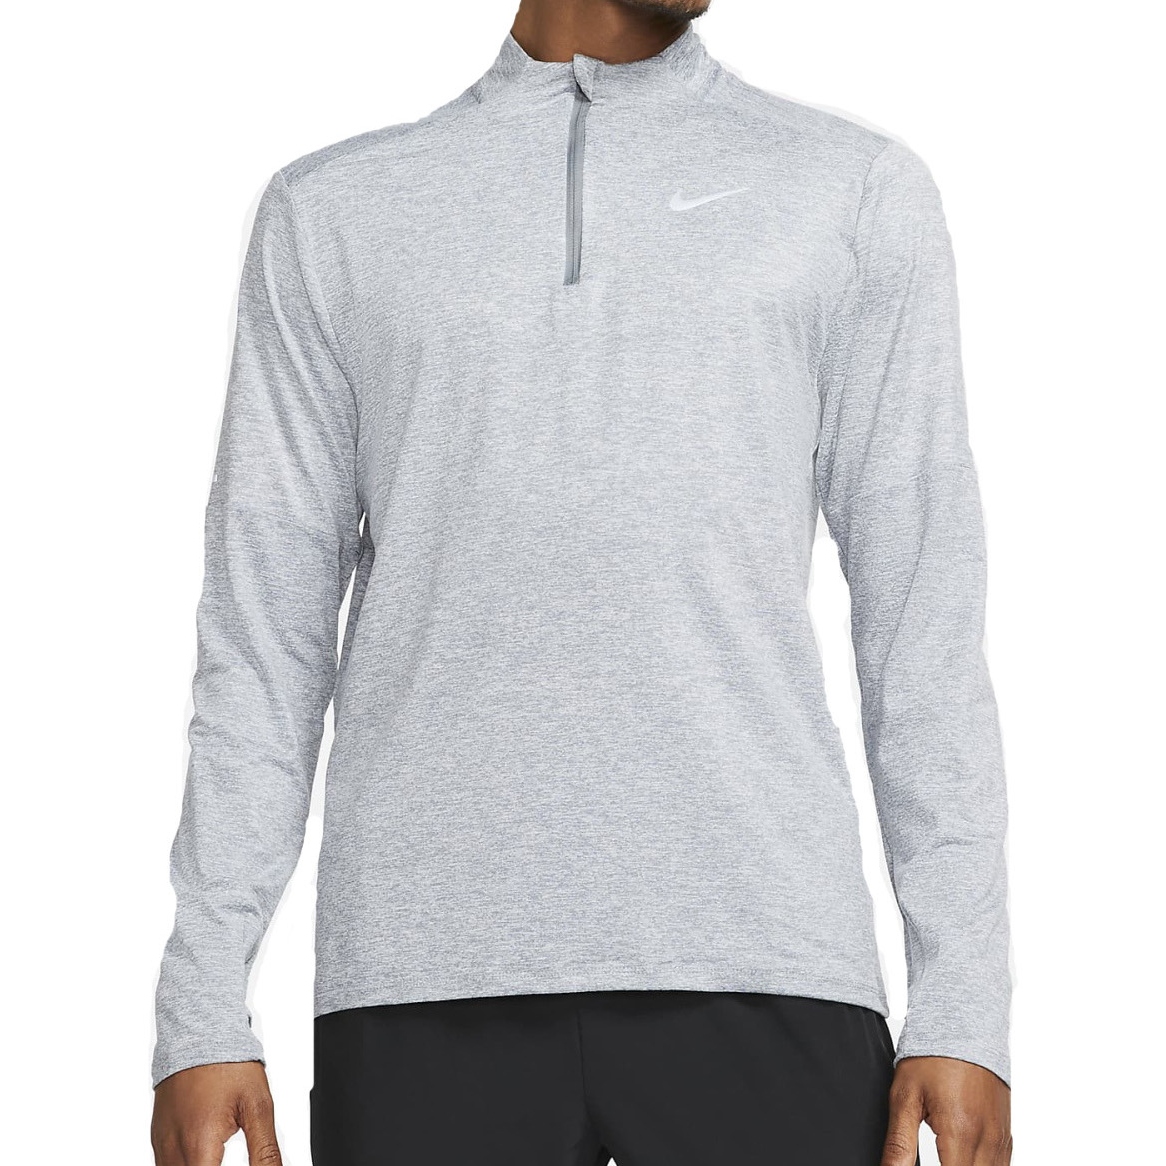 Bild von Nike Dri-Fit 1/4-Zip Herren Langarm-Laufshirt - smoke grey/grey fog/reflective silver DD4756-084